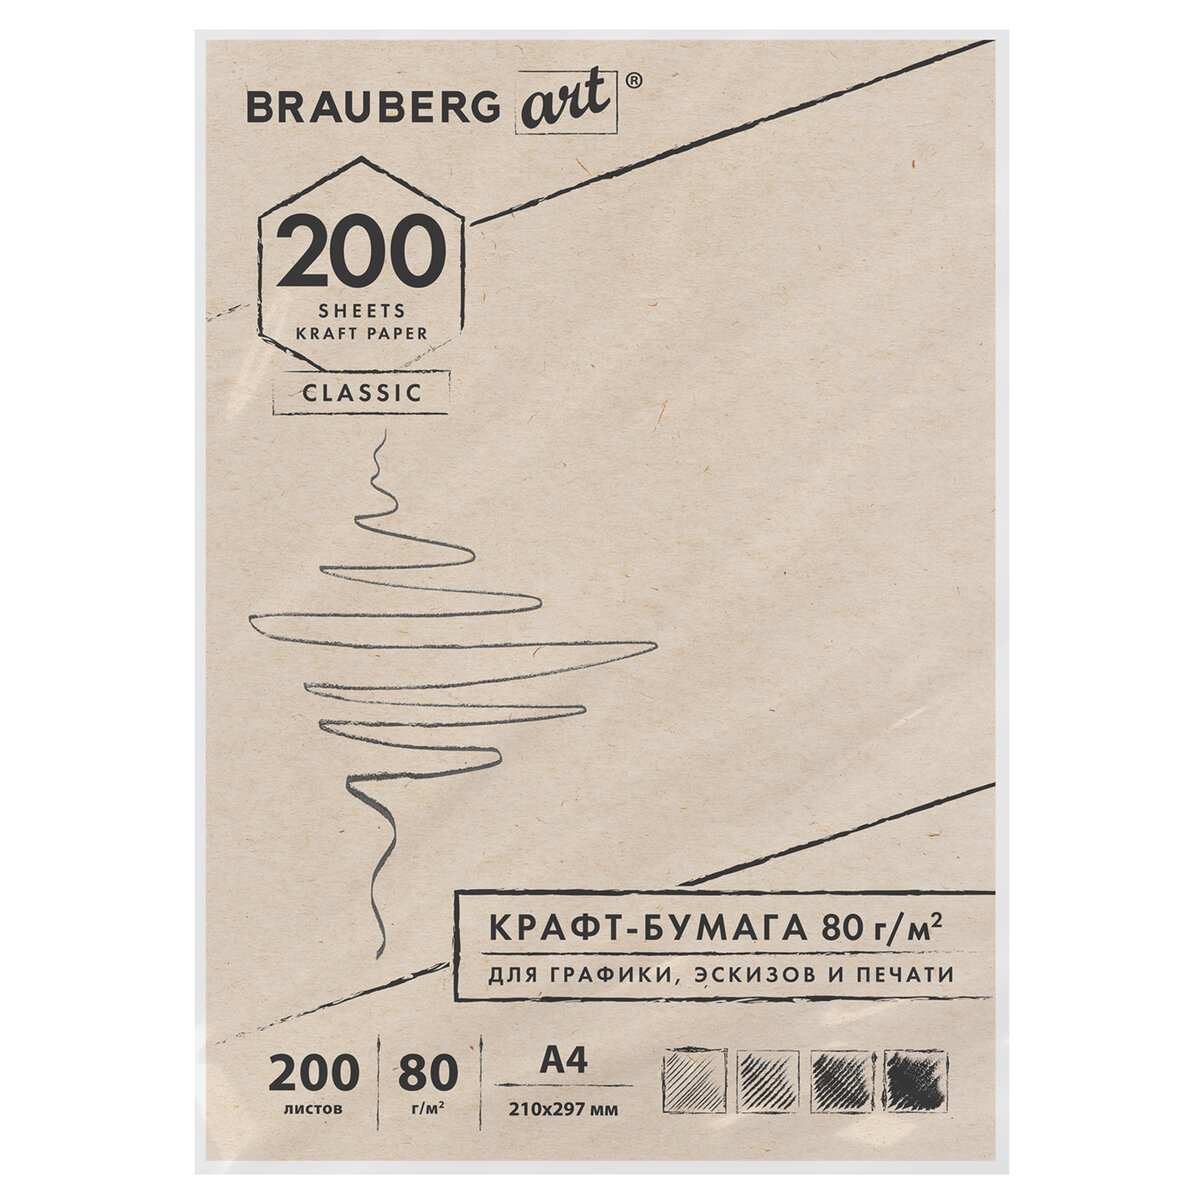 Крафт-бумага Brauberg для графики эскизов печати Art Classic А4 200л - фото 1